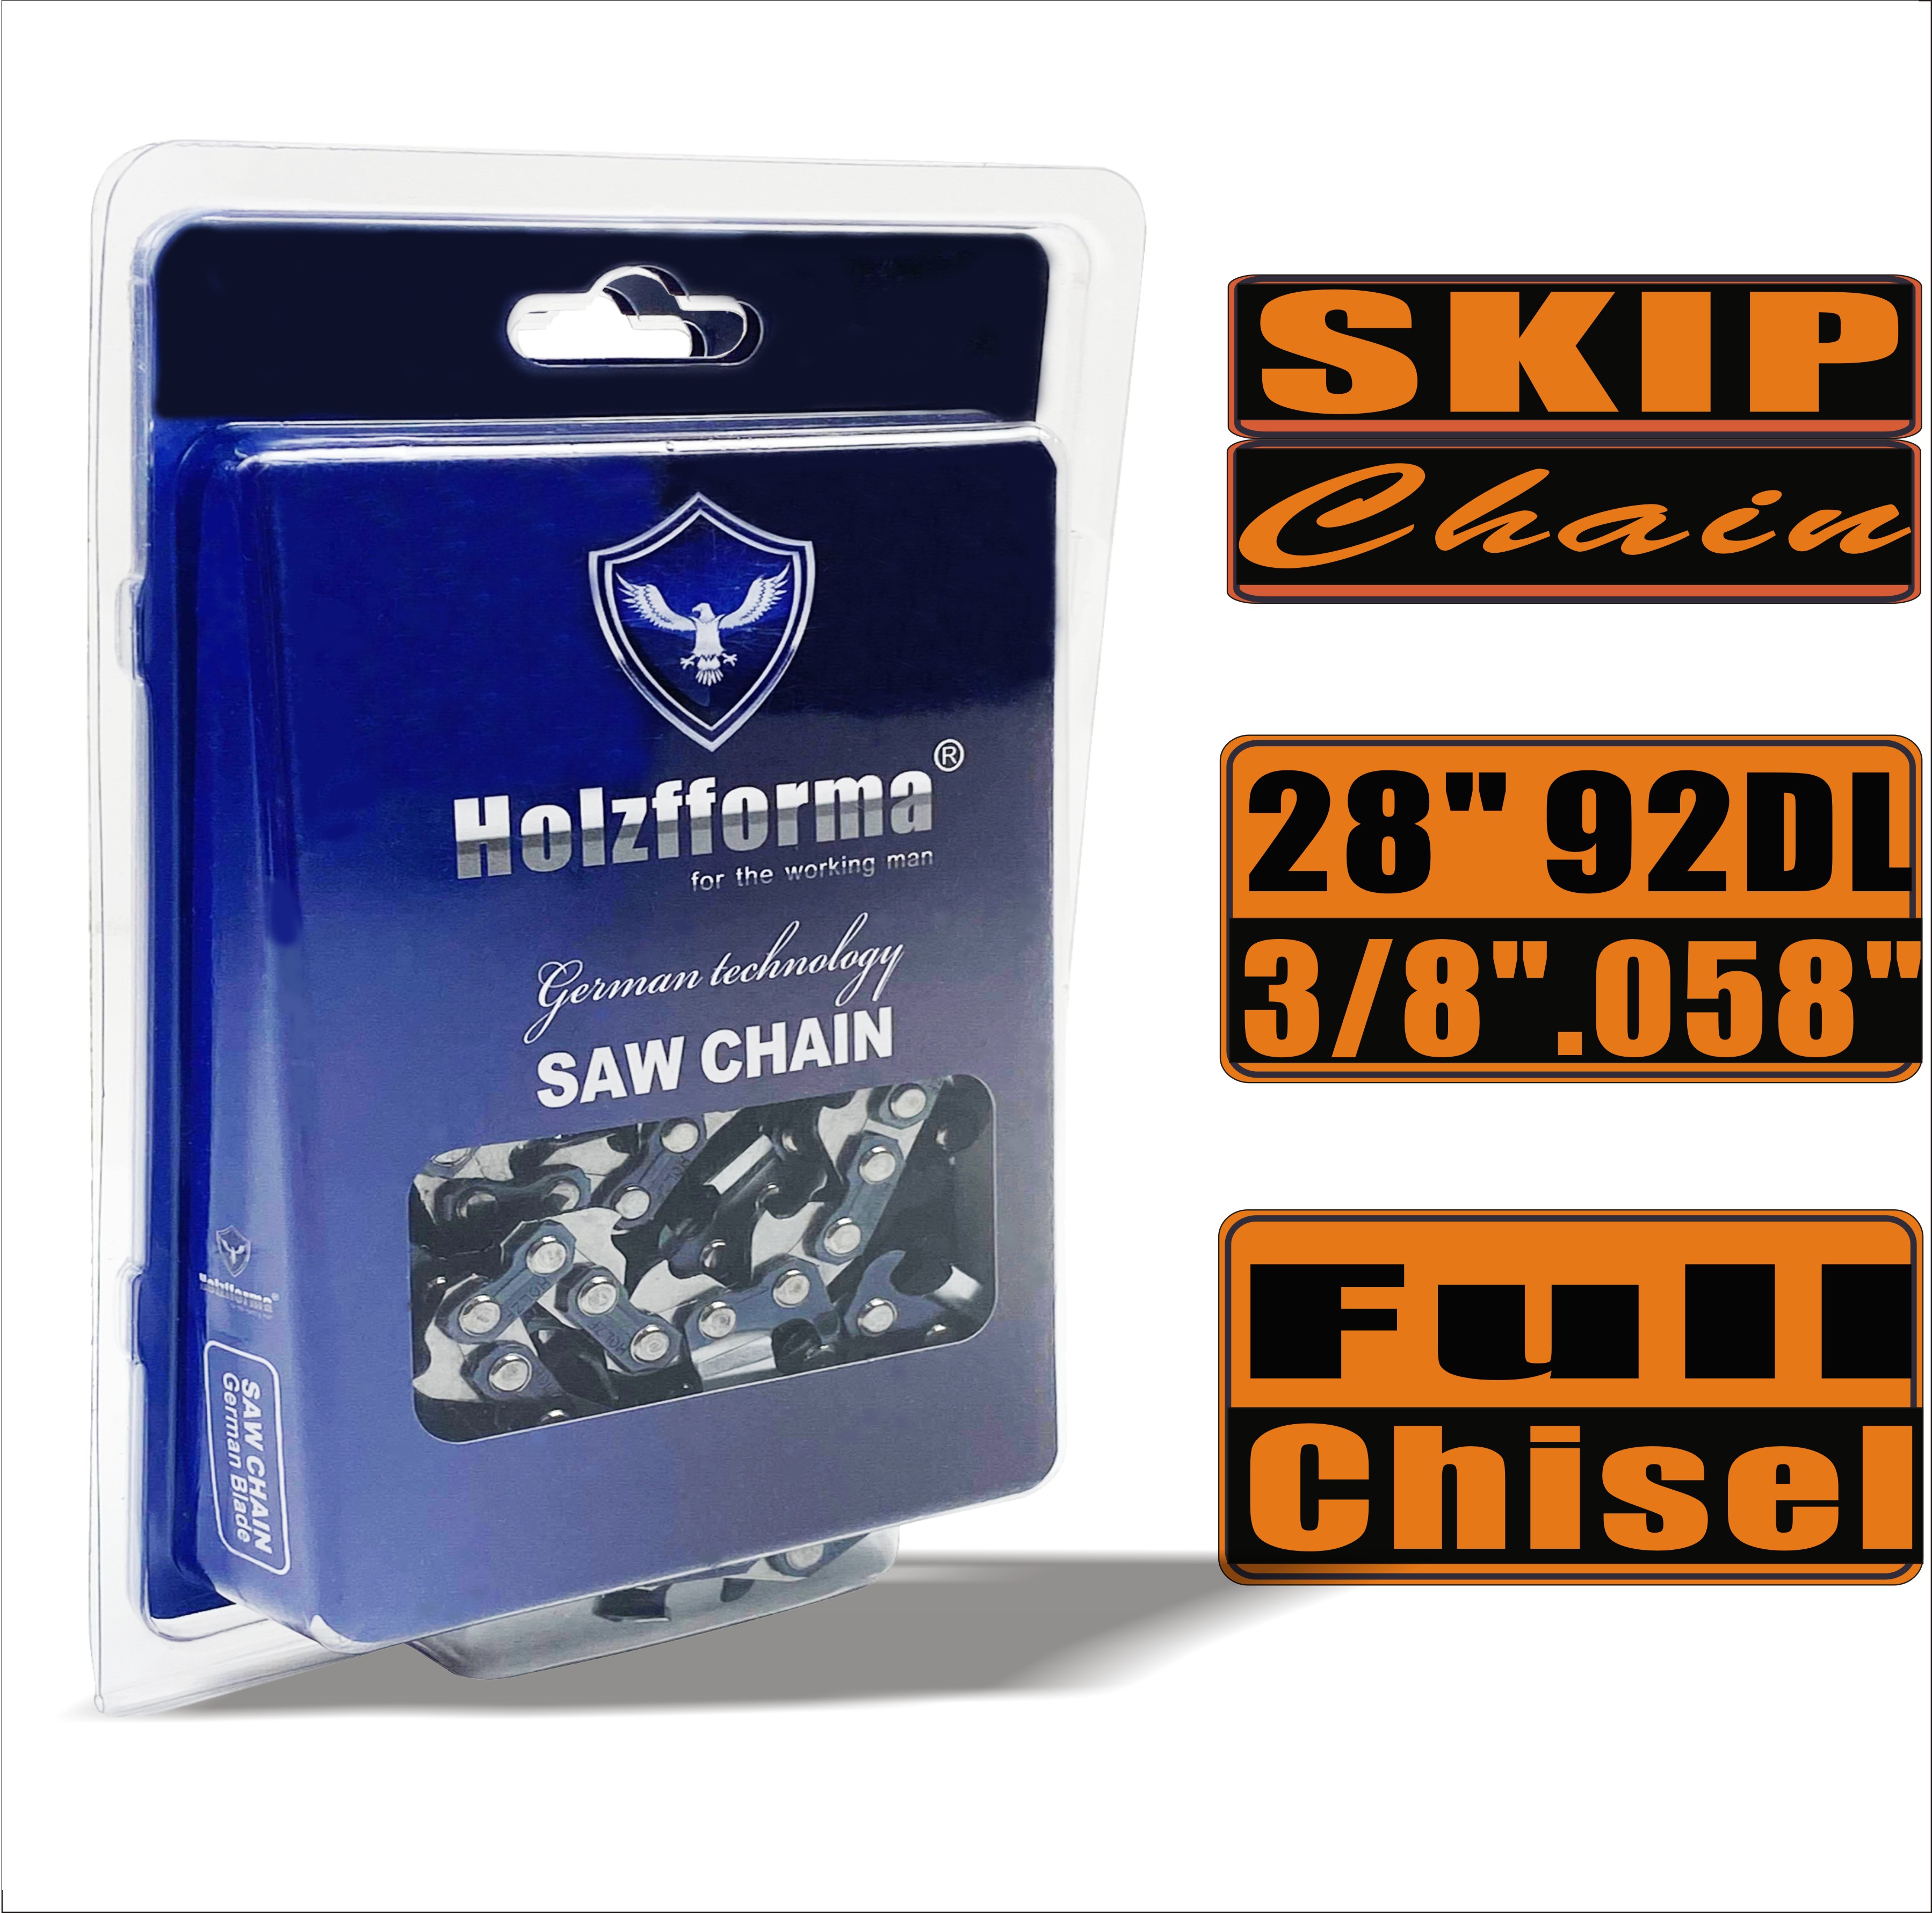 Holzfforma® Skip Chain Full Chisel 3/8'' 0,058'' 28 дюймов 92DL цепи для Бензопилы Высококачественные немецкие лезвия и звенья